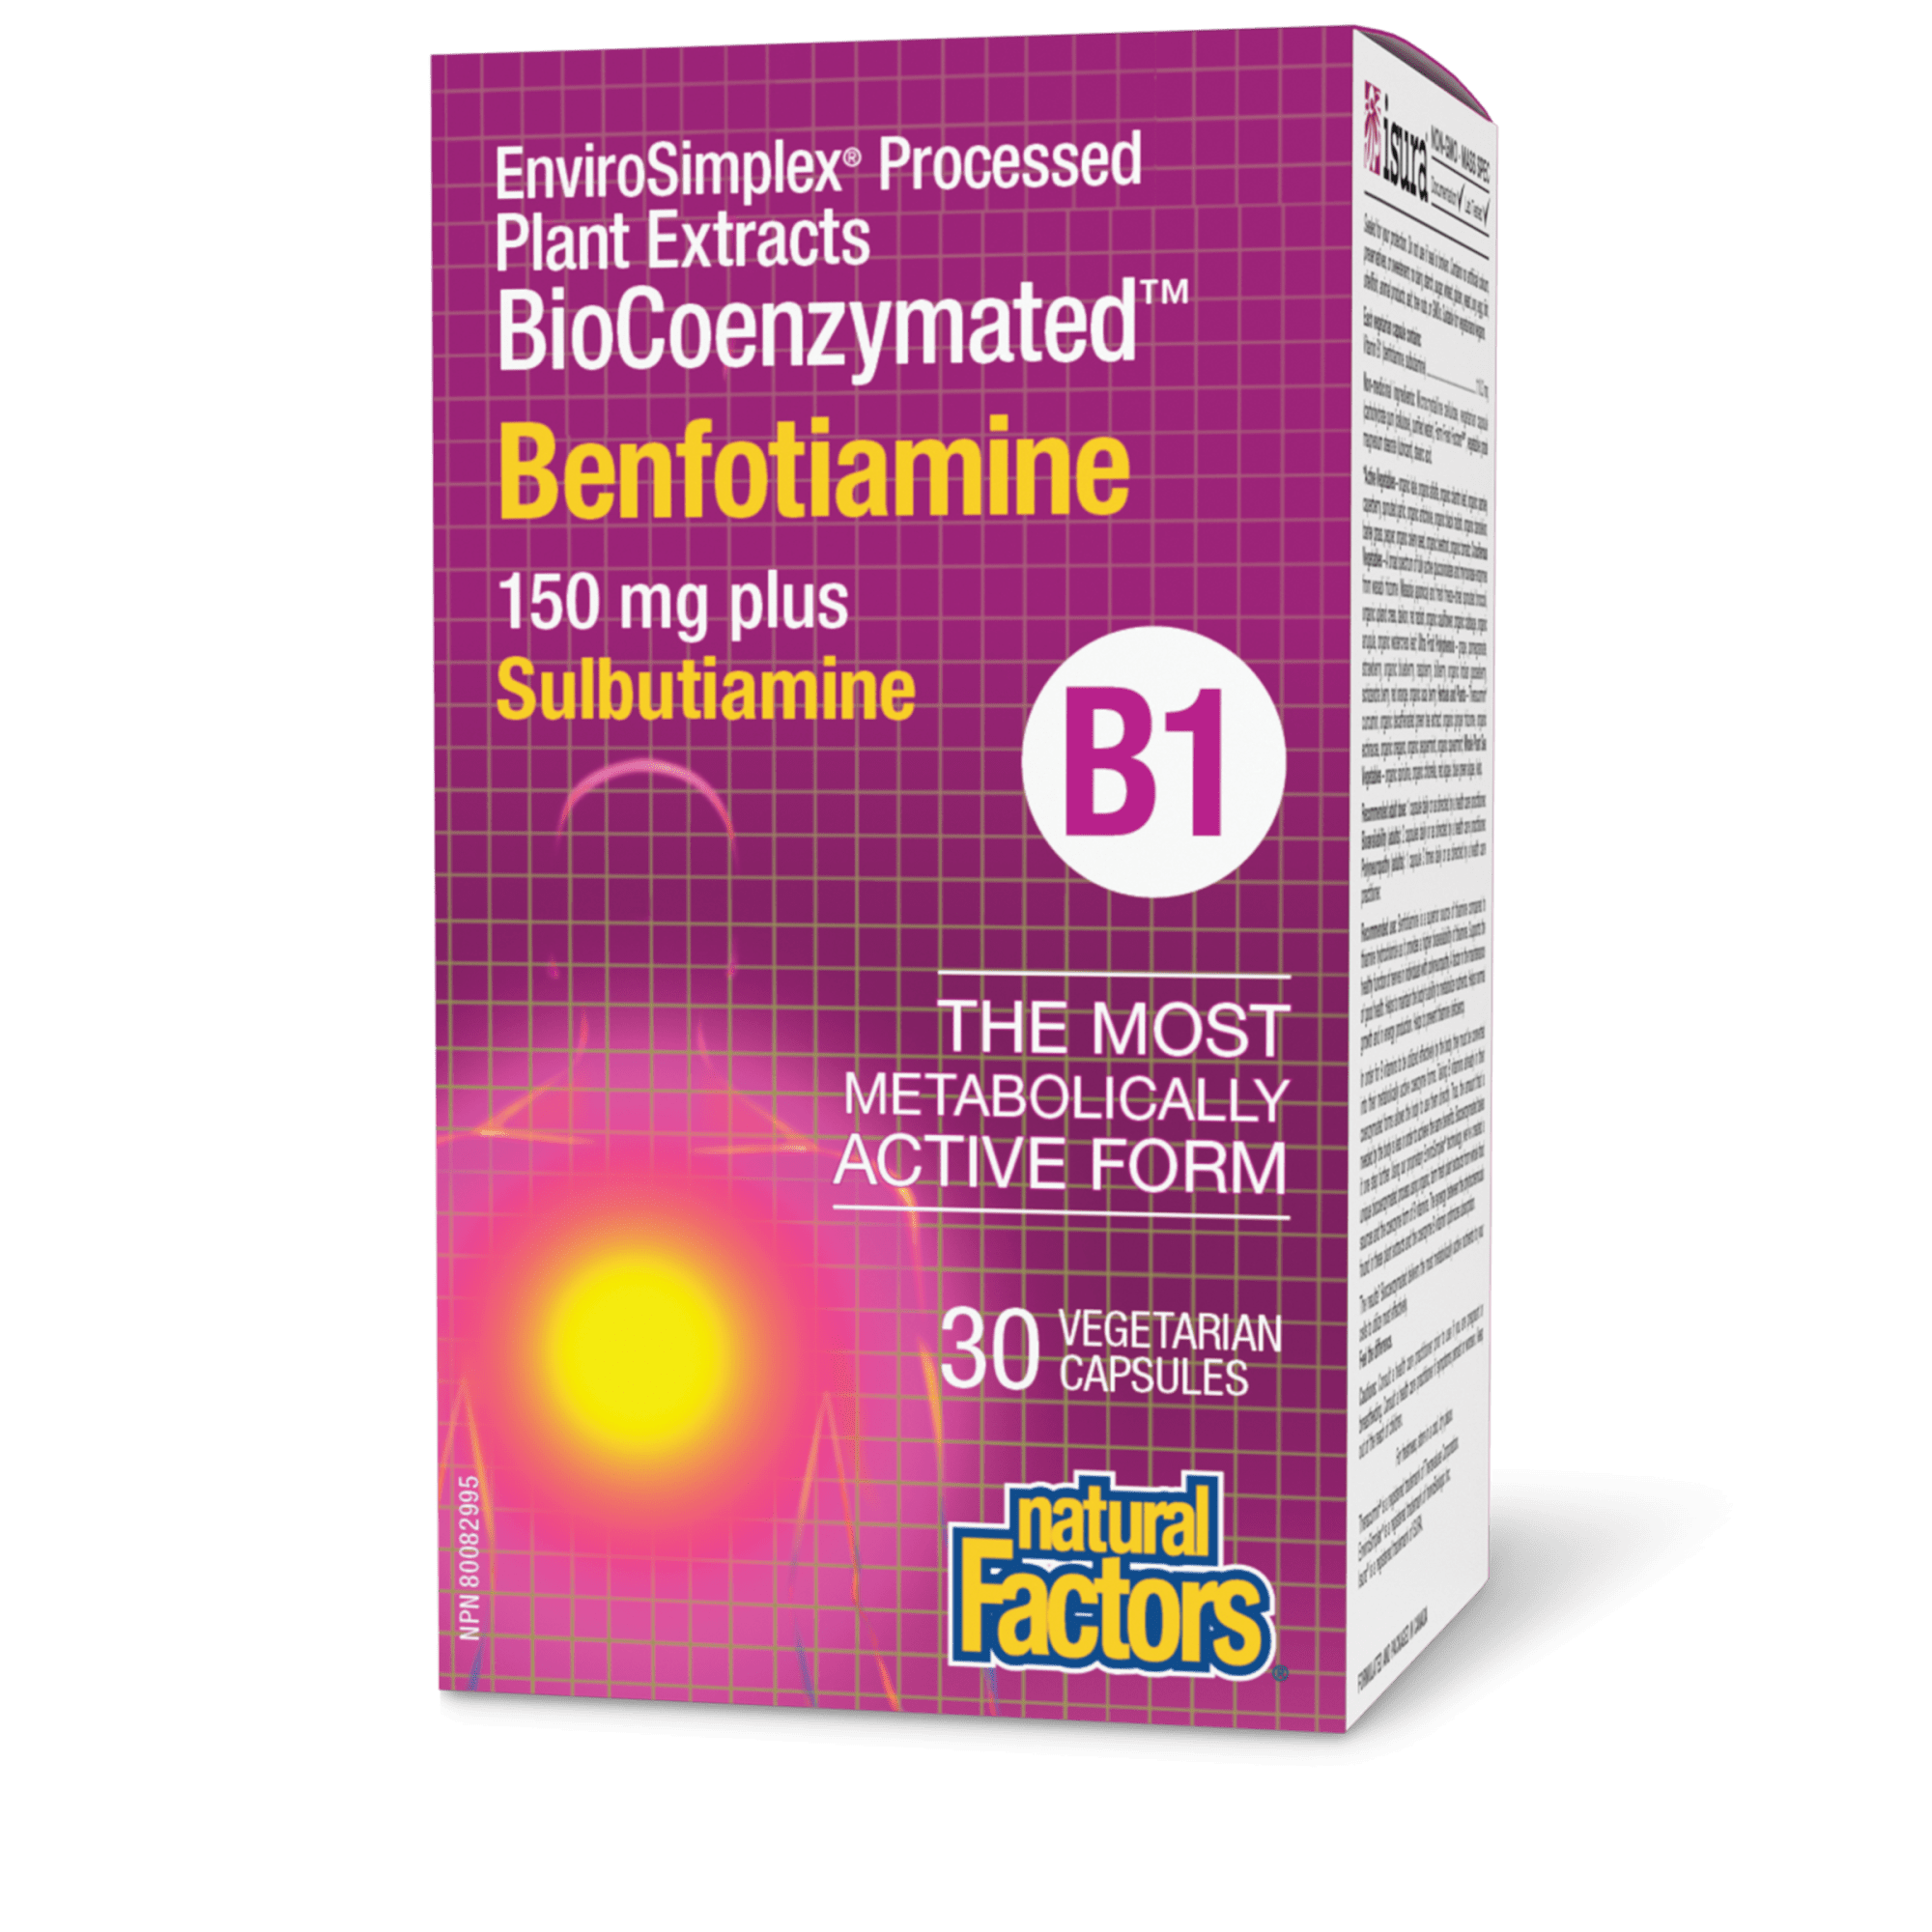 Natural Factors BioCoenzymated Benfotiamine B1 Plus Sulbutamine 30 Vegetarian Capsules